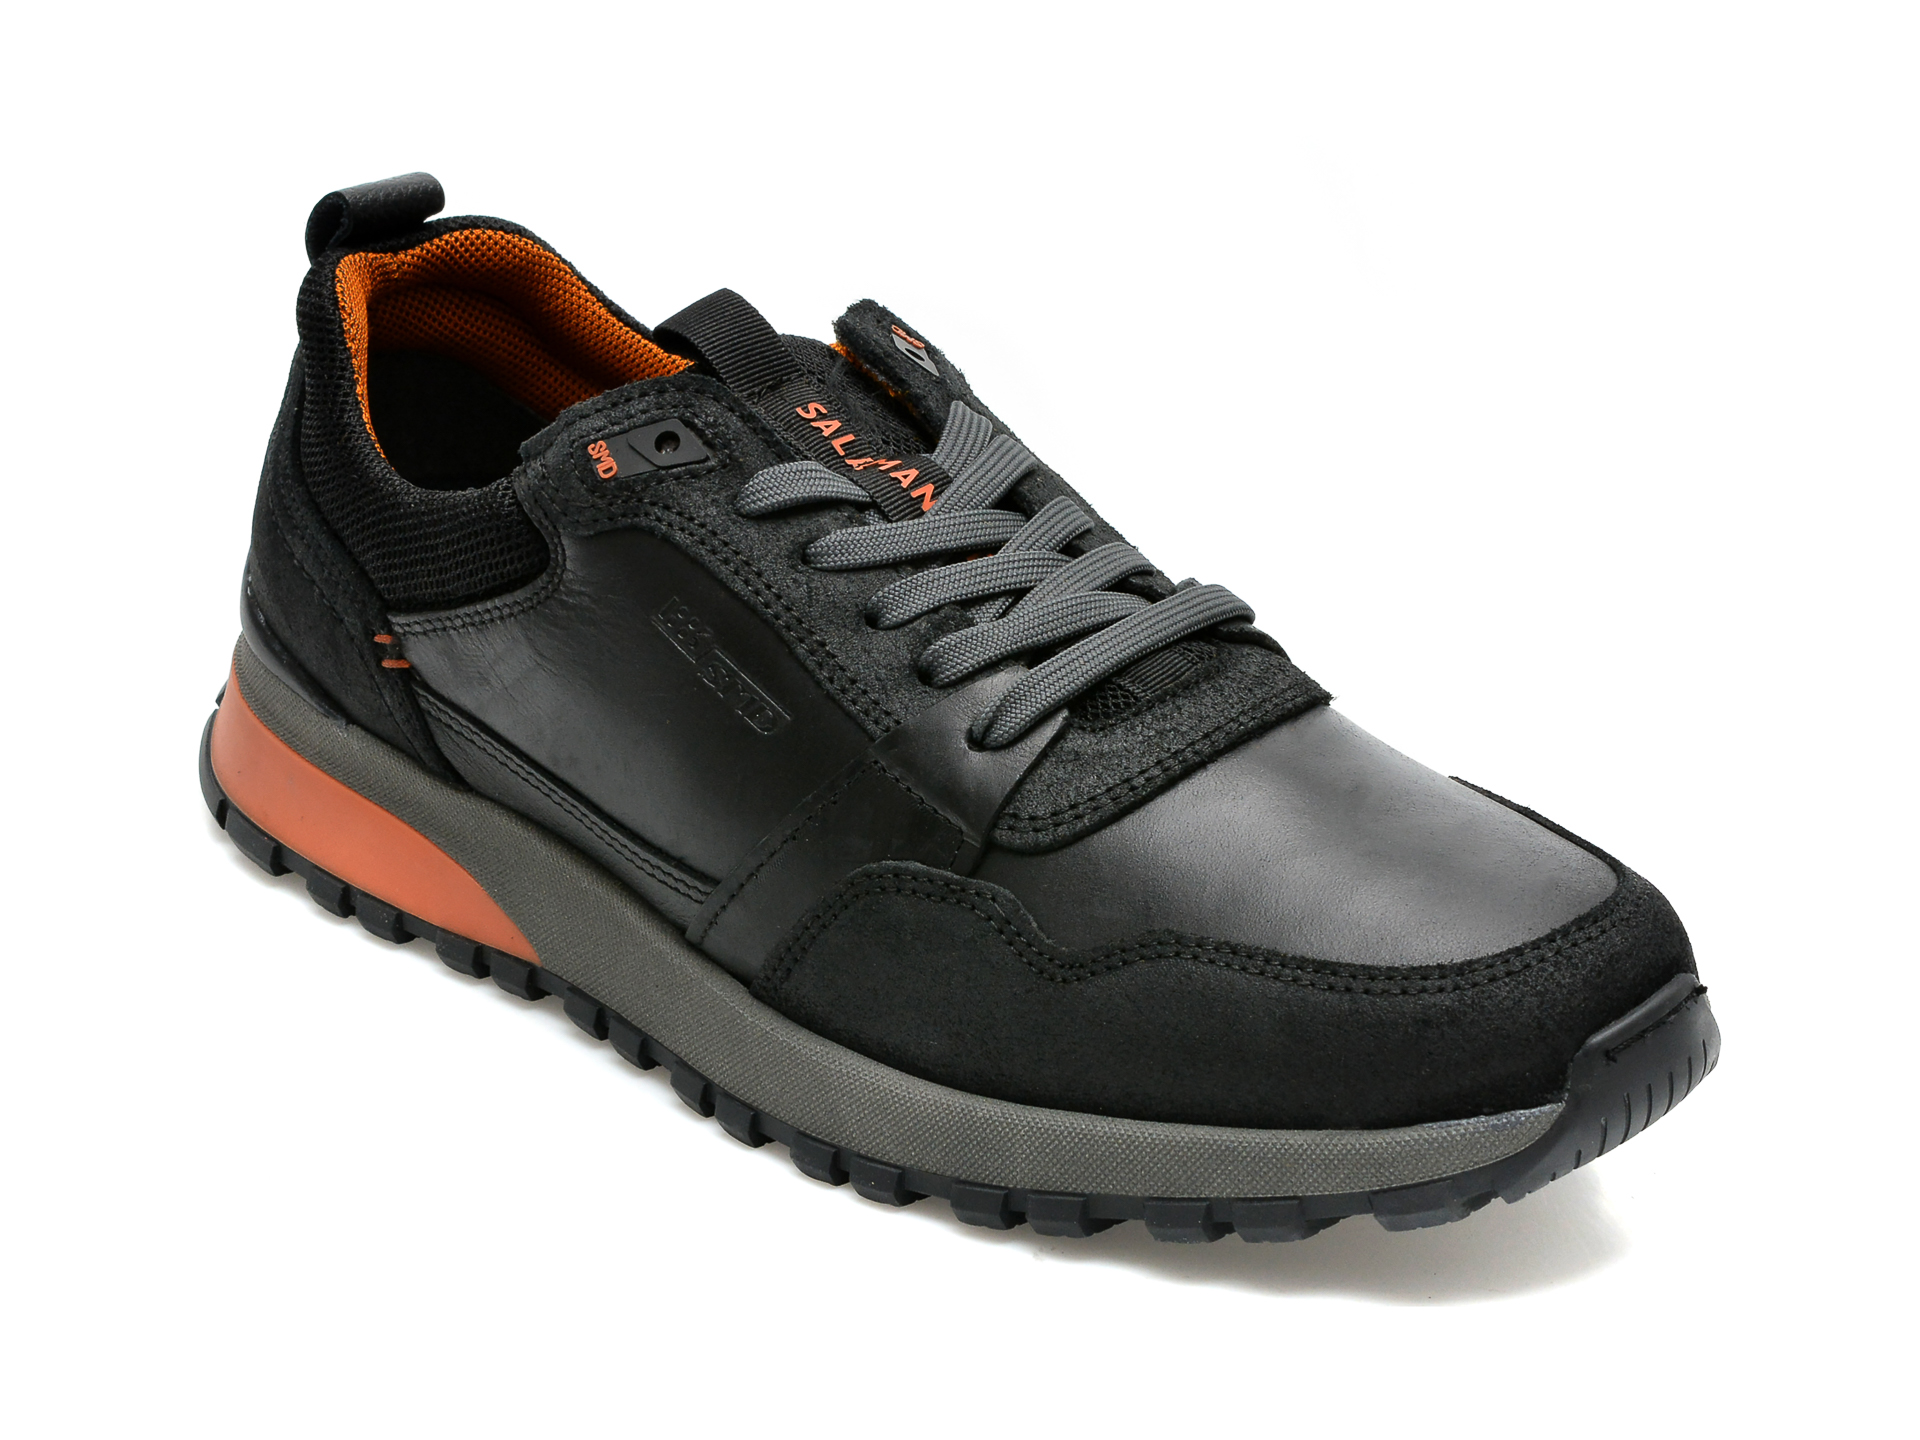 Pantofi sport SALAMANDER negri, 48801, din piele naturala /barbati/pantofi